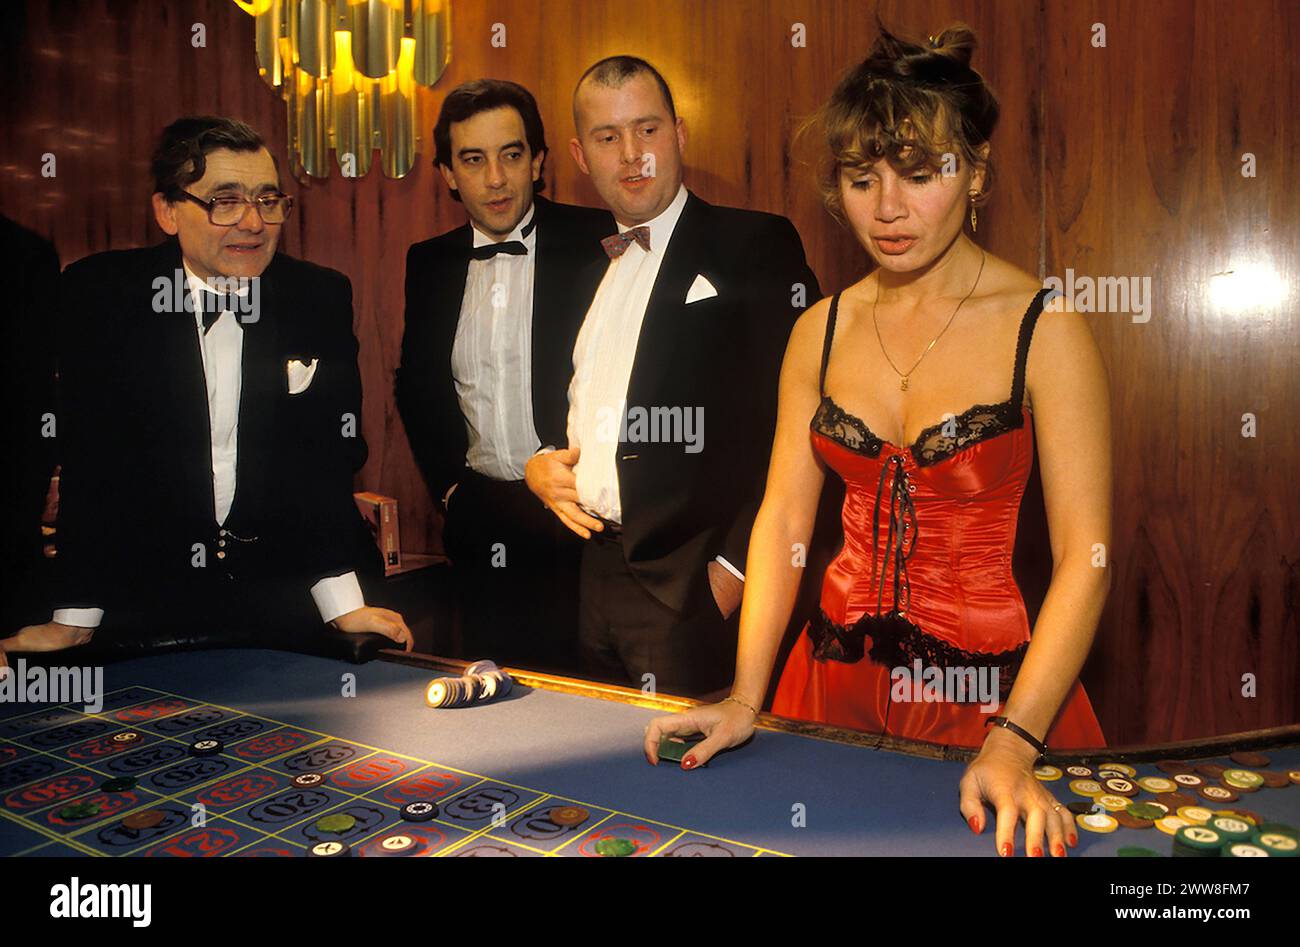 Roulette UK 1990s spielen Drei wären High Roller, wenn sie ihr Glück am Roulette-Tisch bei einem Spendenball im London Hilton on Park Lane hätten. Die Croupierin trägt ein burleskes Korsett baskisch. London, England ca. Dezember 1992. Stockfoto